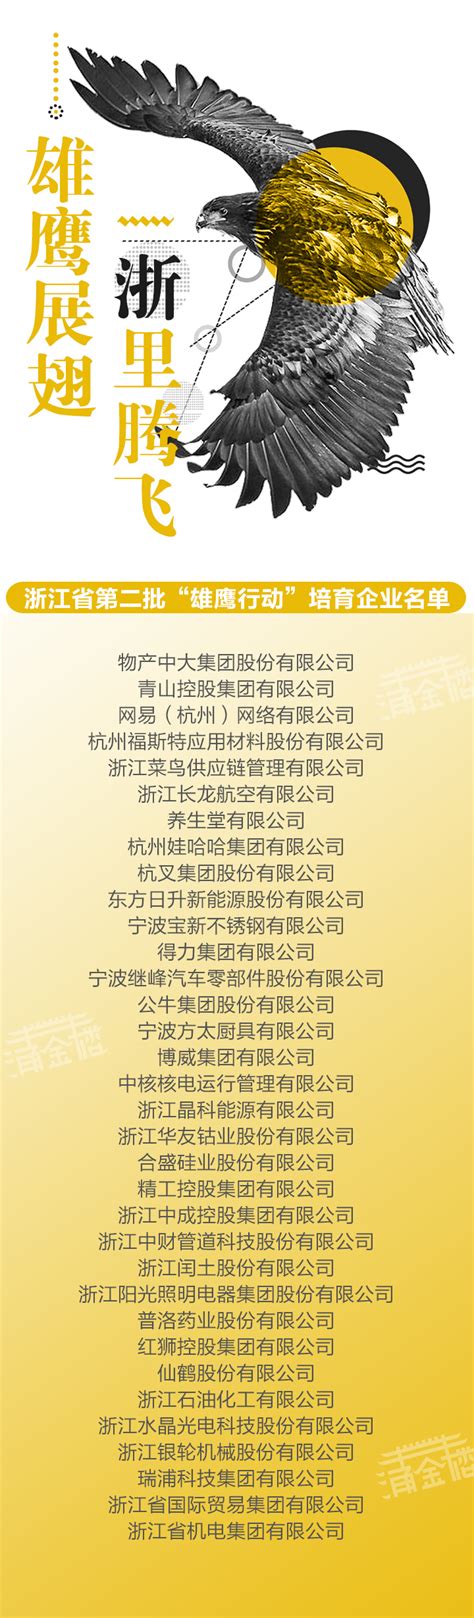 浙江公布第二批“雄鹰企业”培育名单 共34家_杭州网